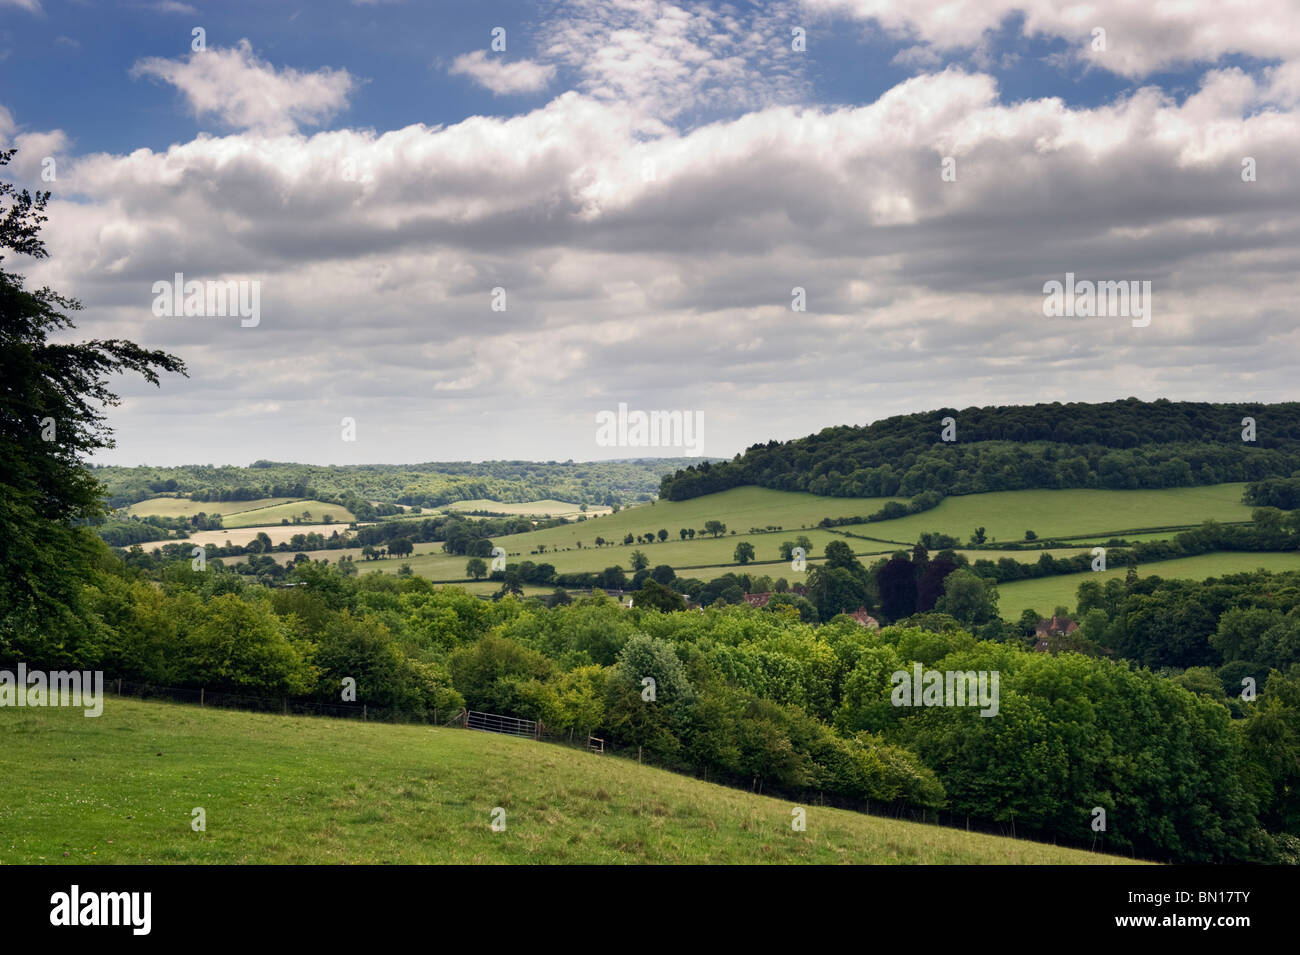 Eine englische Landschaft Blick auf die Landschaft des Hambleden-Tals in Chilterns Landschaft, Buckinghamshire UK Stockfoto